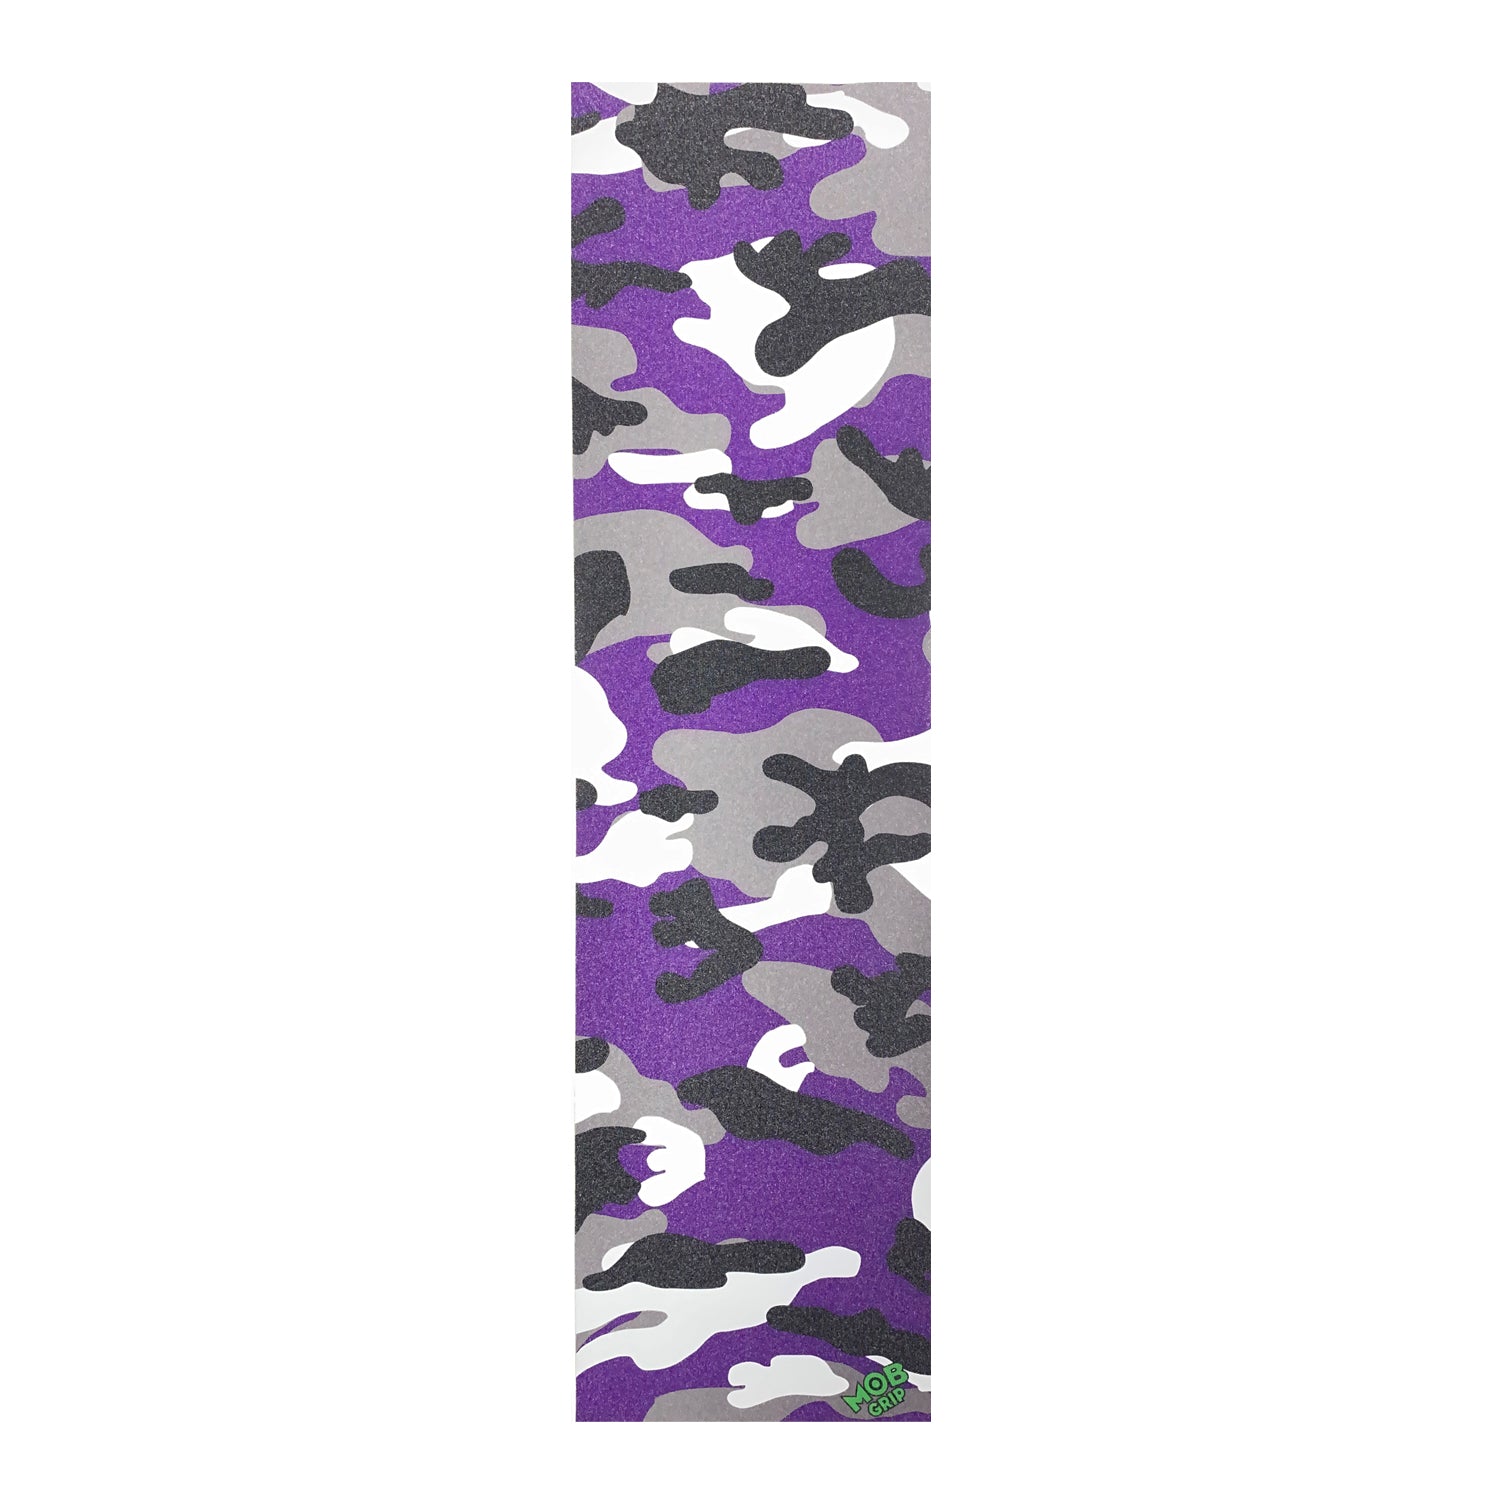 Mob 33 x 9" Graphic Grip Camo - Purple - Prime Delux Store